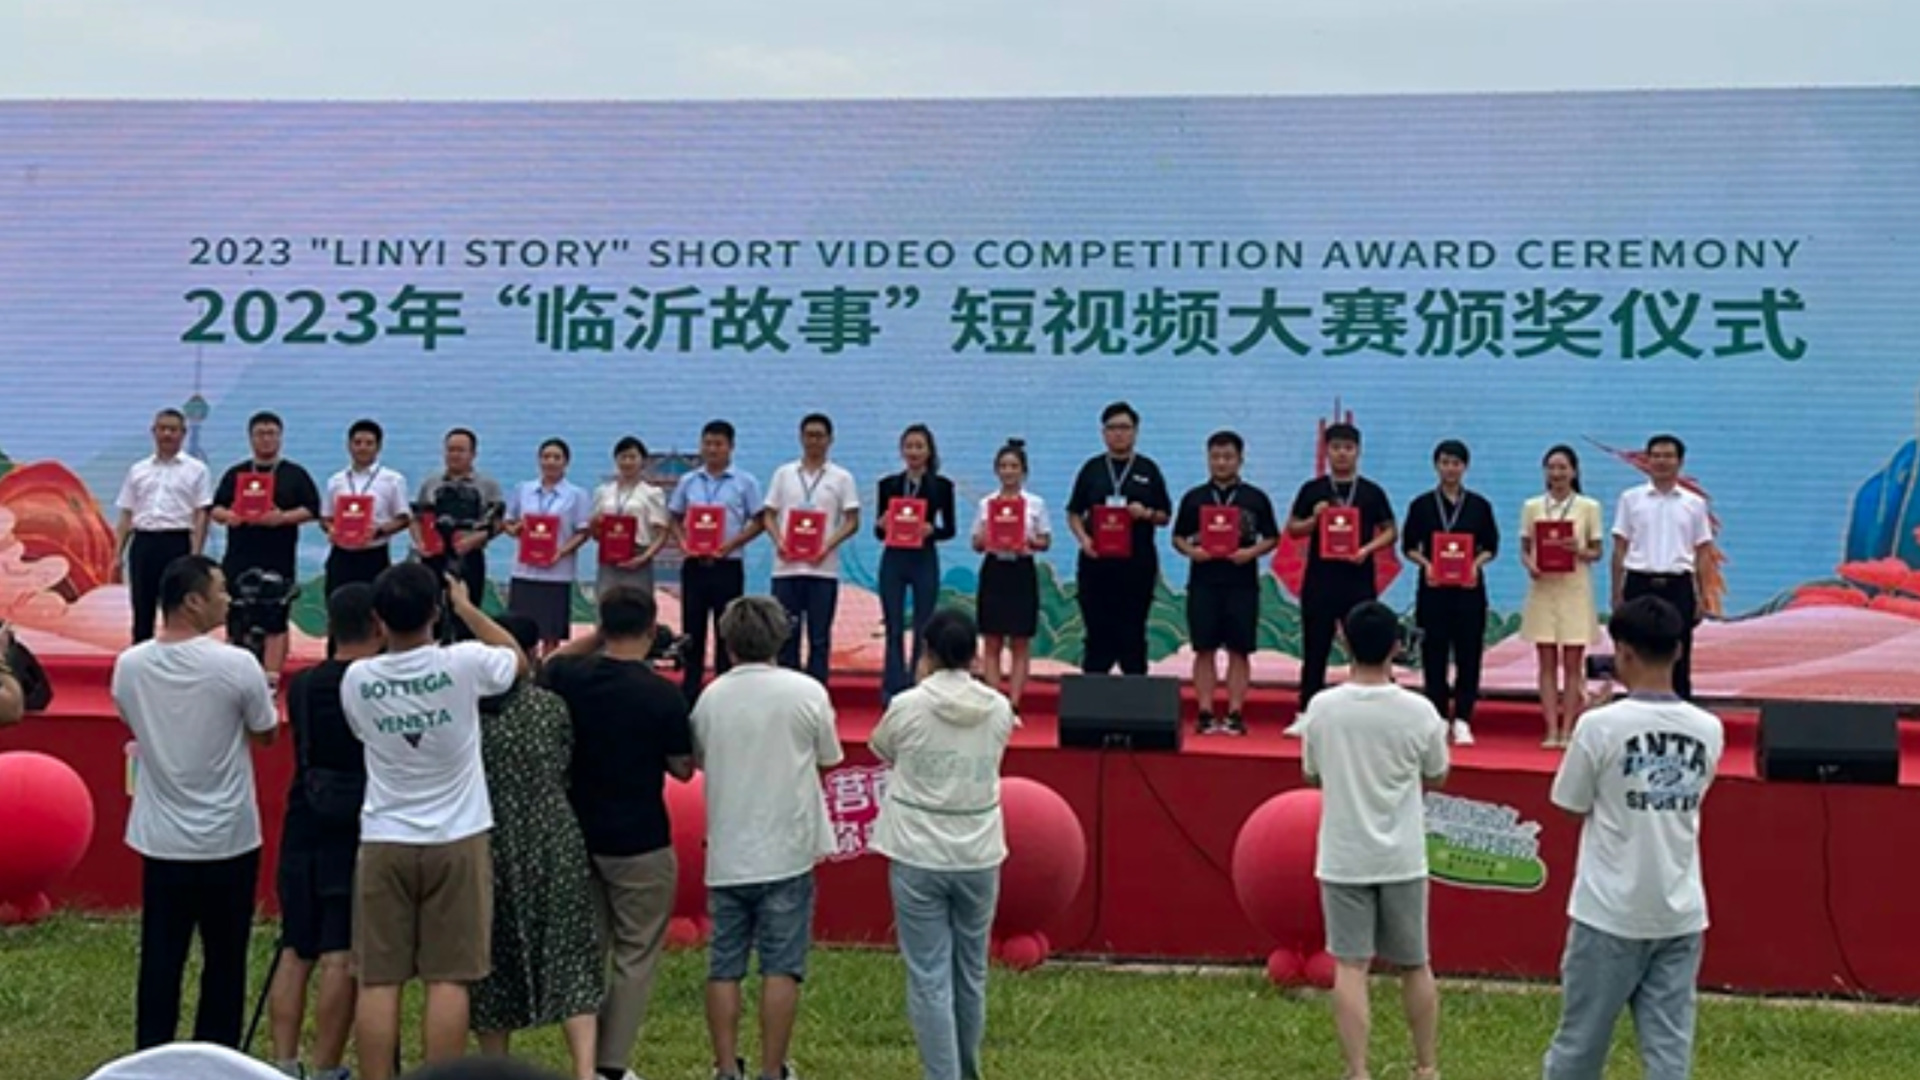 恭喜智顺·五月微新媒体！分别在临沂故事短视频大赛获得一等奖和二等奖。